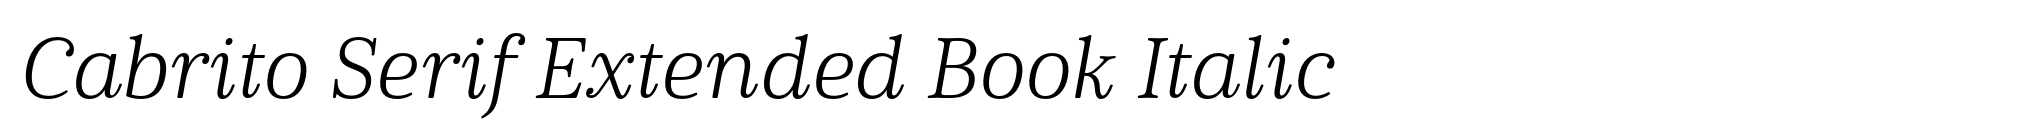 Cabrito Serif Extended Book Italic image